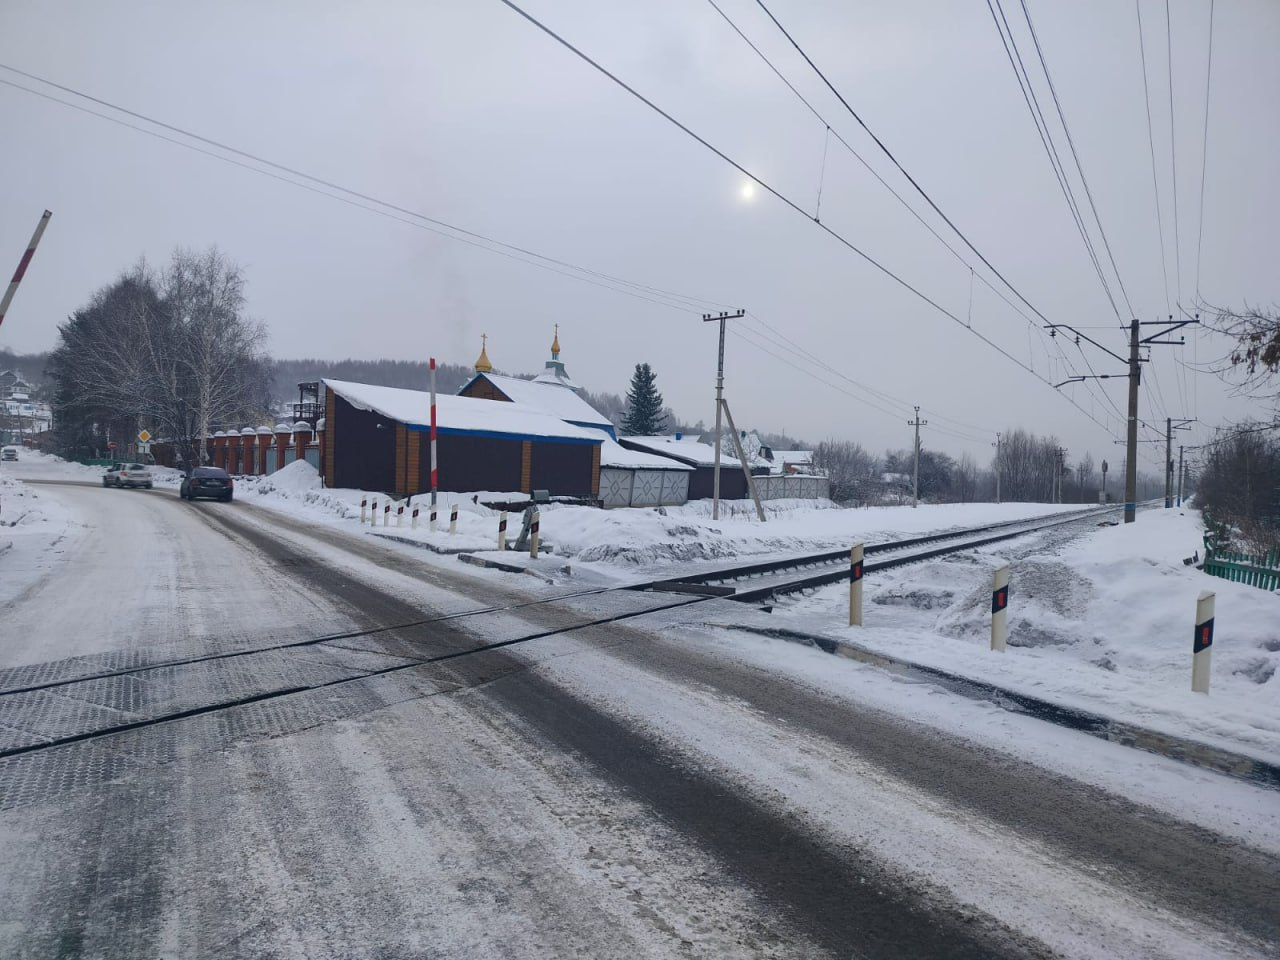 Транспортная полиция Сибири рассказала о подробностях наезда поезда на пожилую новокузнечанку